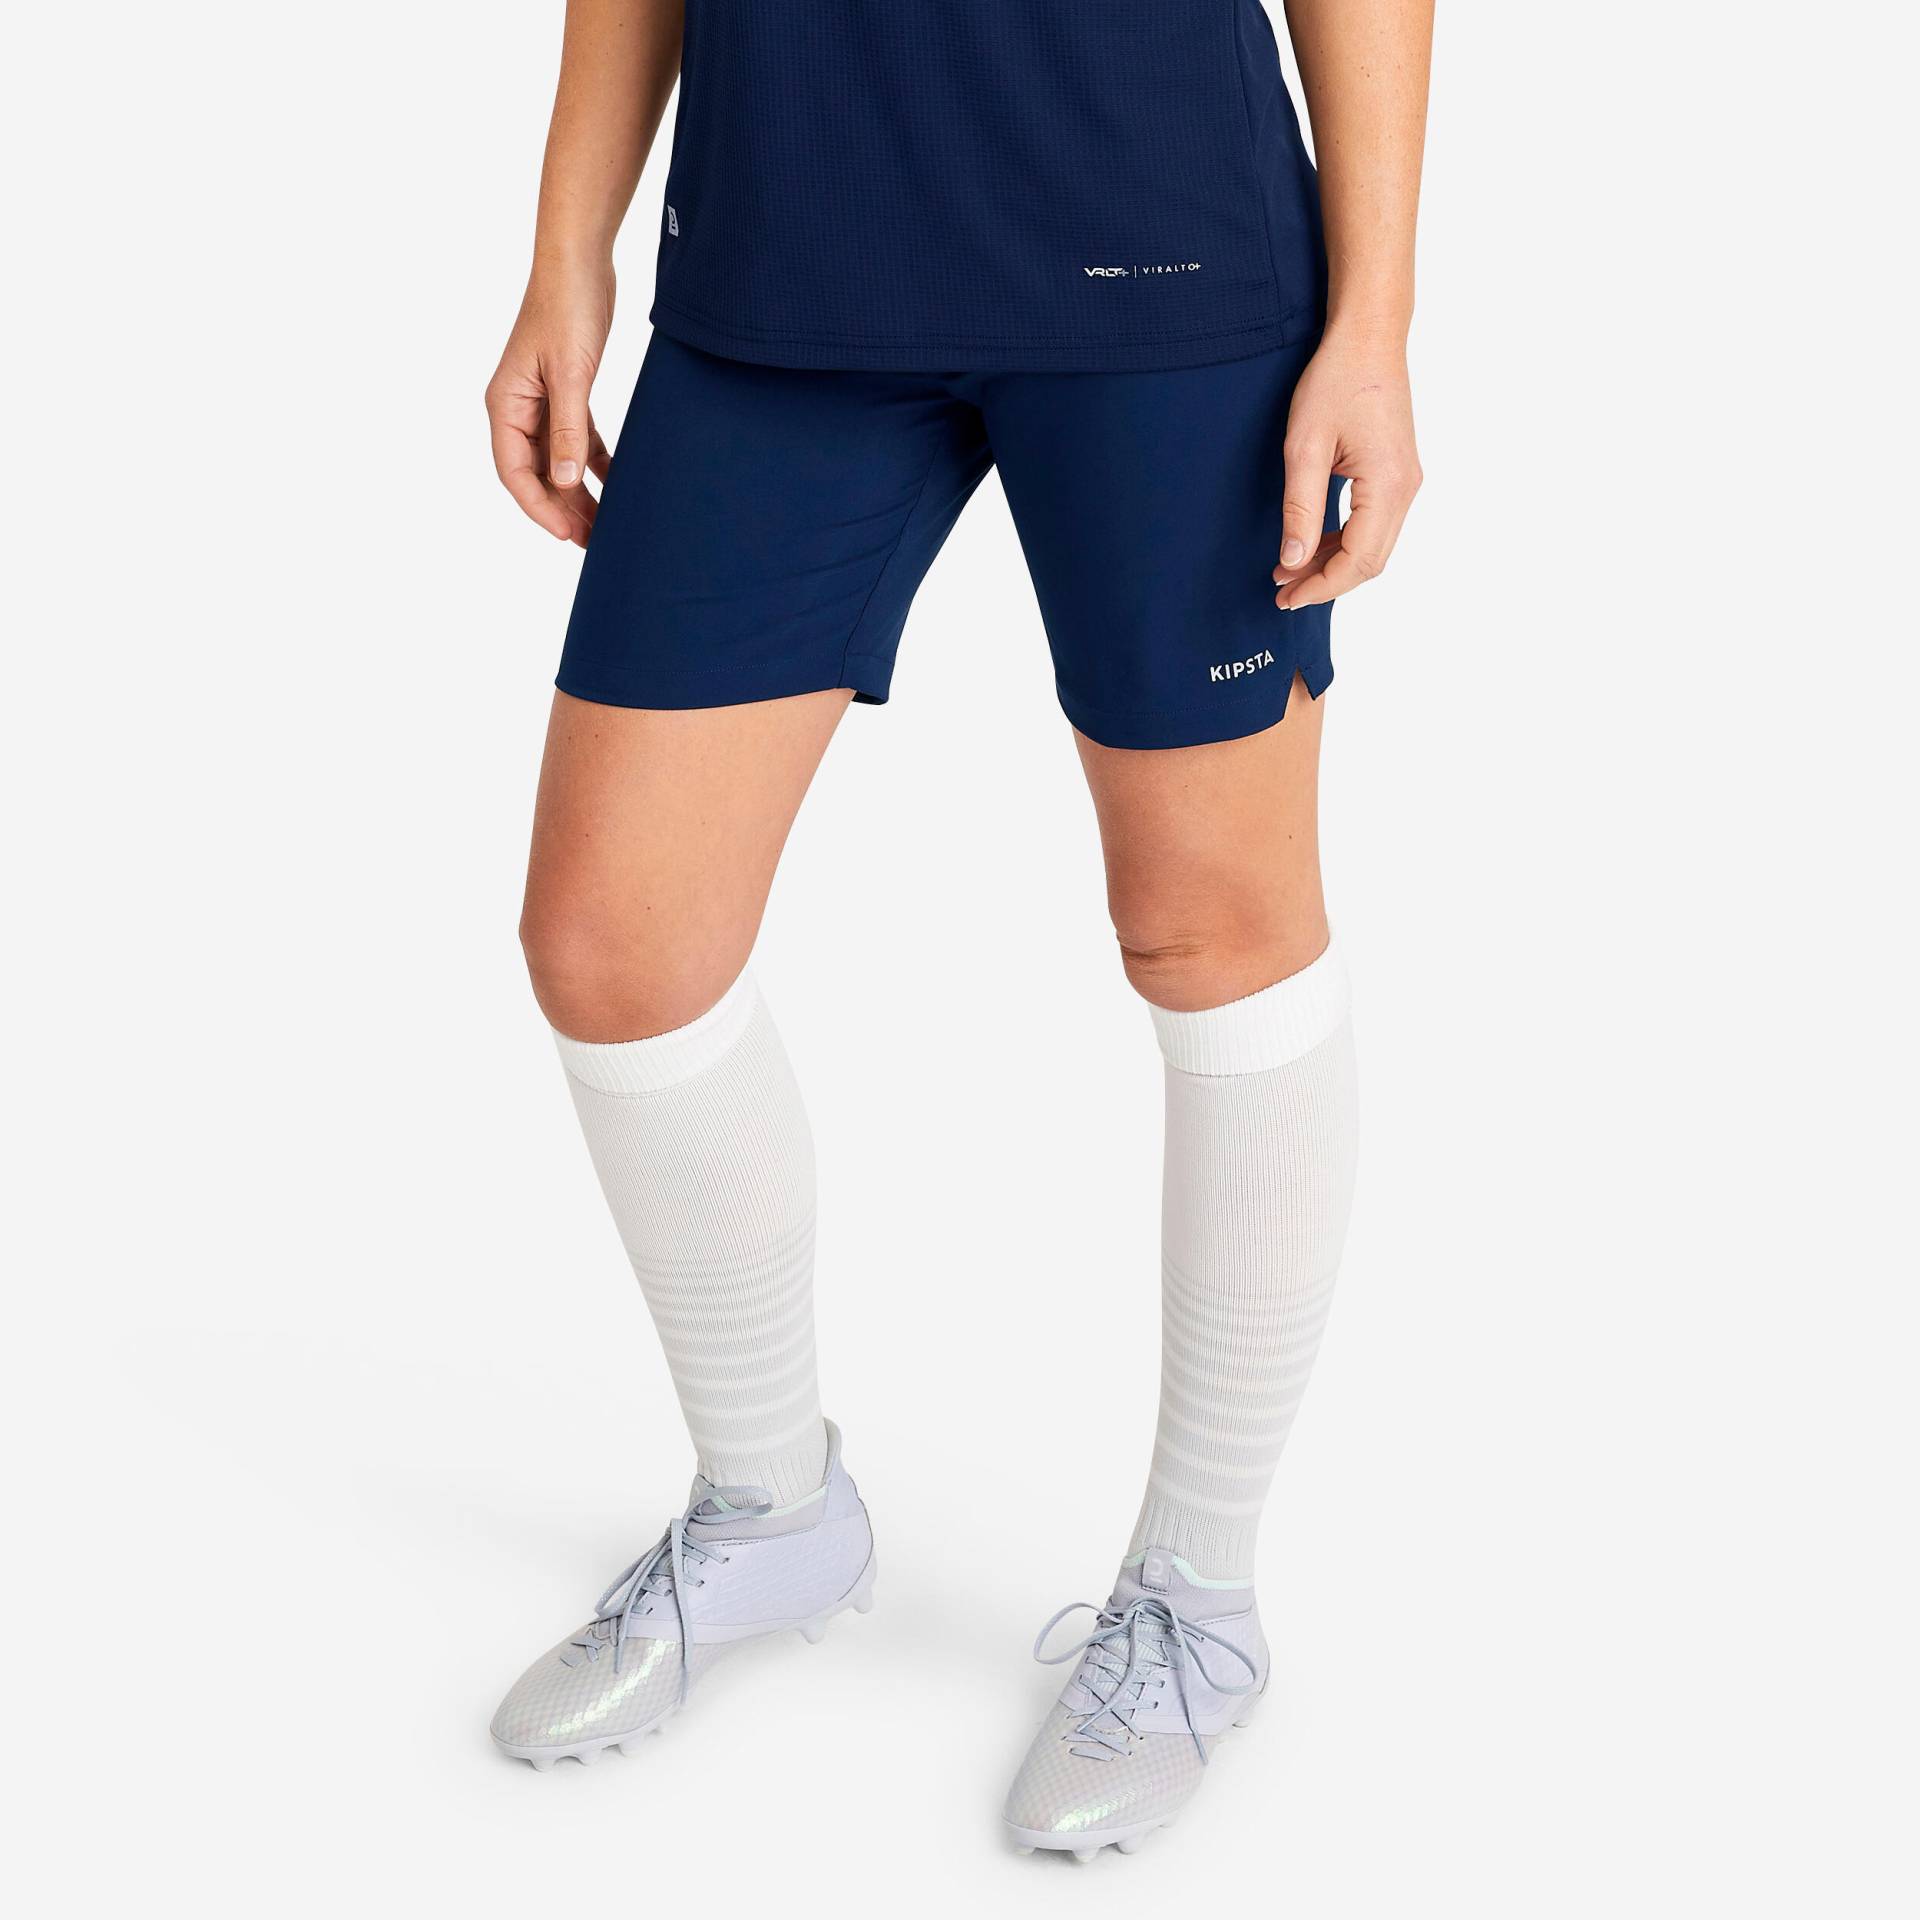 Damen Fussball Shorts - Viralto Club blau von KIPSTA